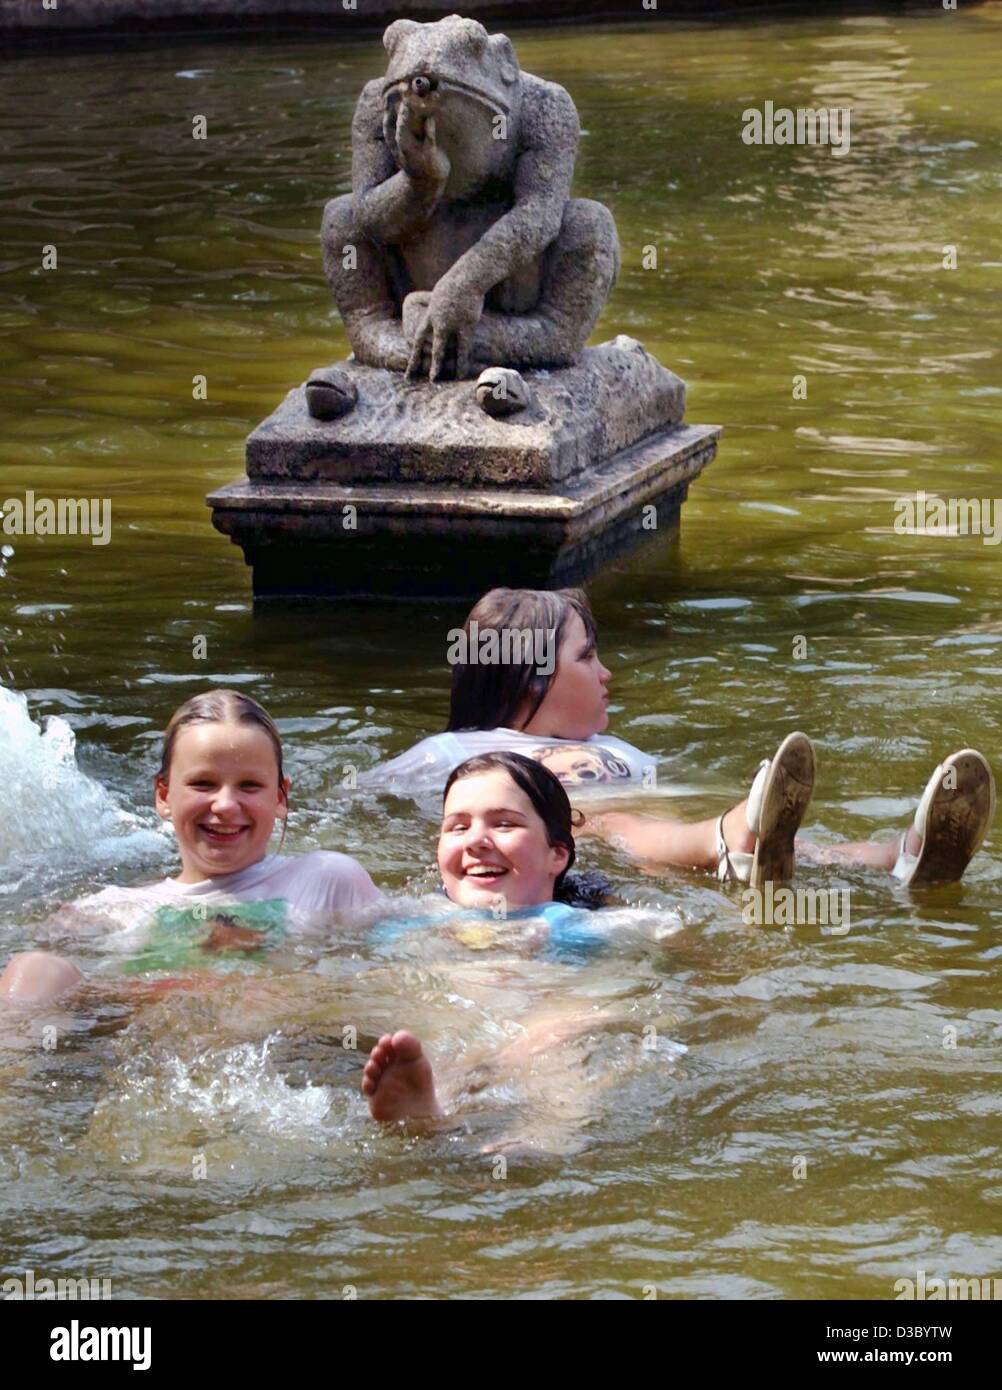 (Dpa) - der Frosch im Märchenbrunnen sieht ein bisschen enttäuscht: keine der jungen Damen, die zu seinen Füßen liegend scheint zu fehlen, um ihn zu küssen... fotografiert im Bezirk Friedrichshain in Berlin, 23. Juli 2003. Stockfoto